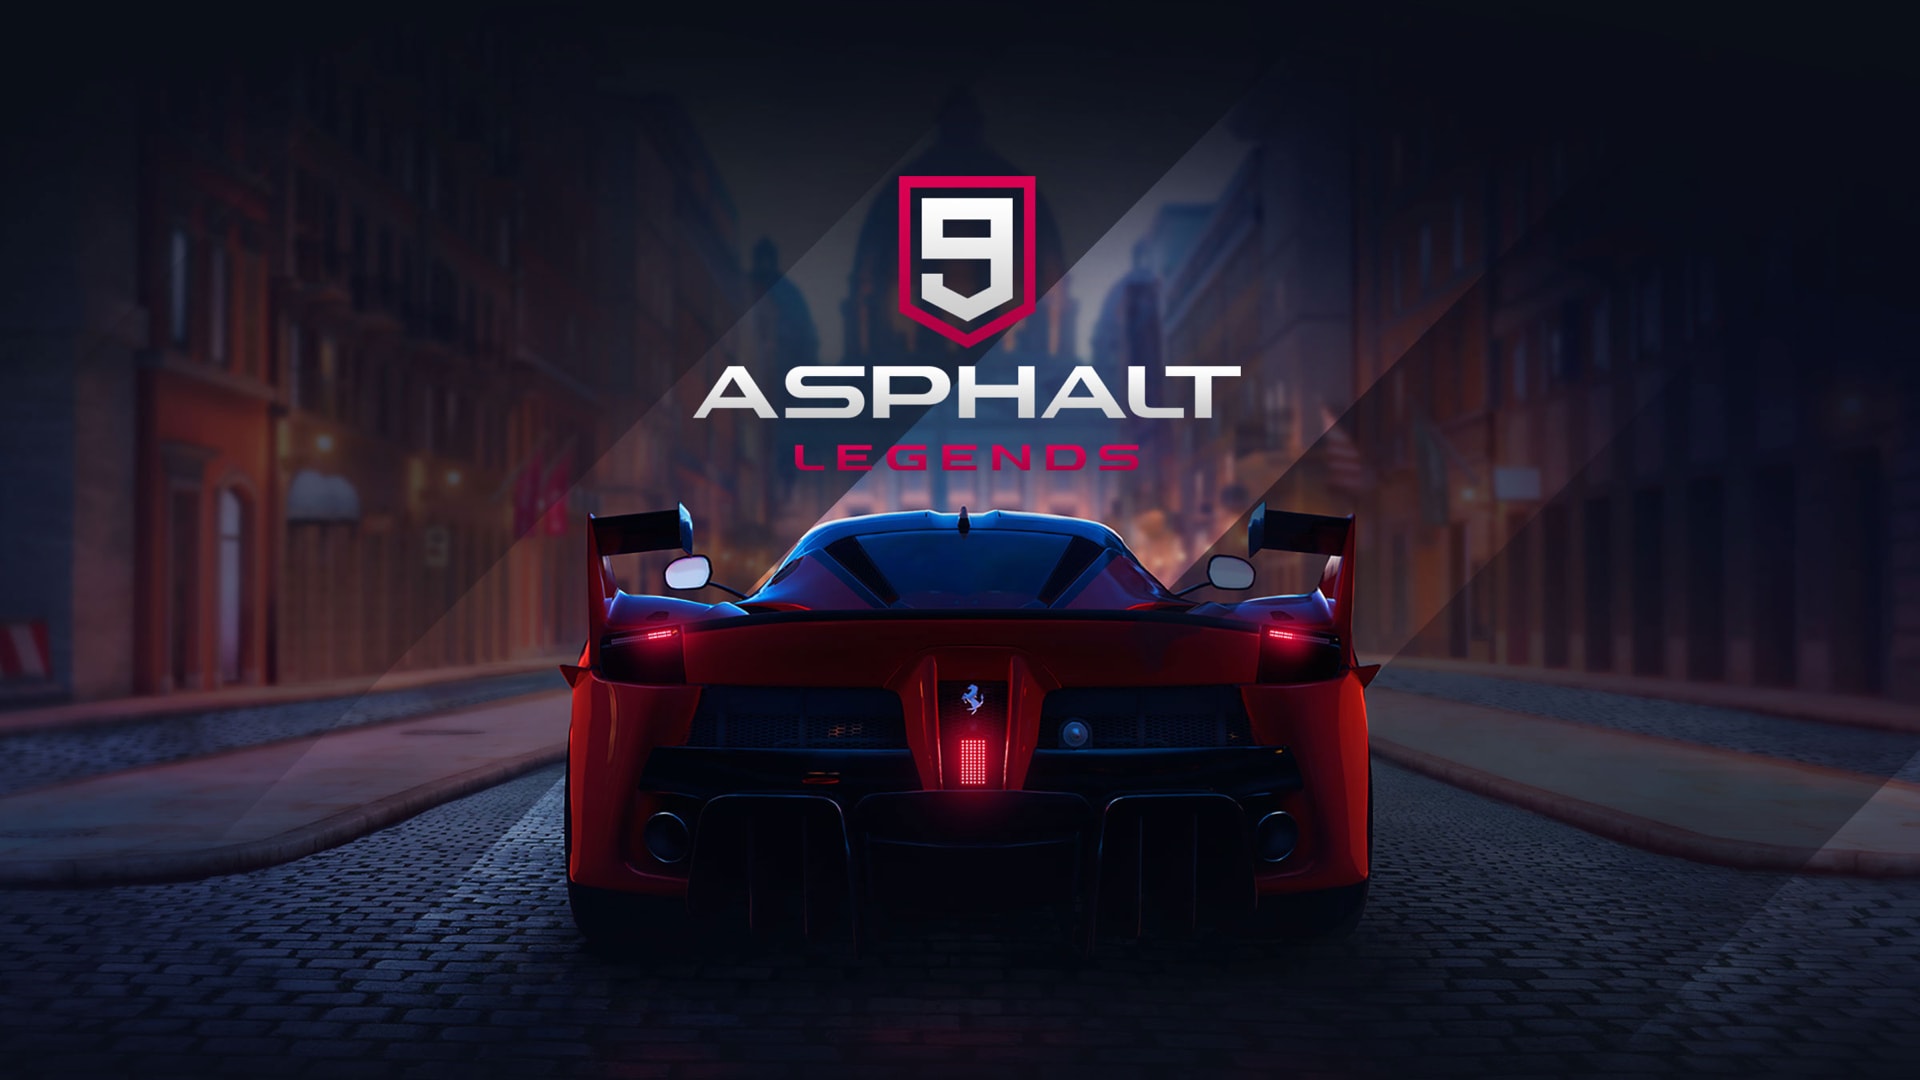 asphalt 9: legends, asphalt, video game